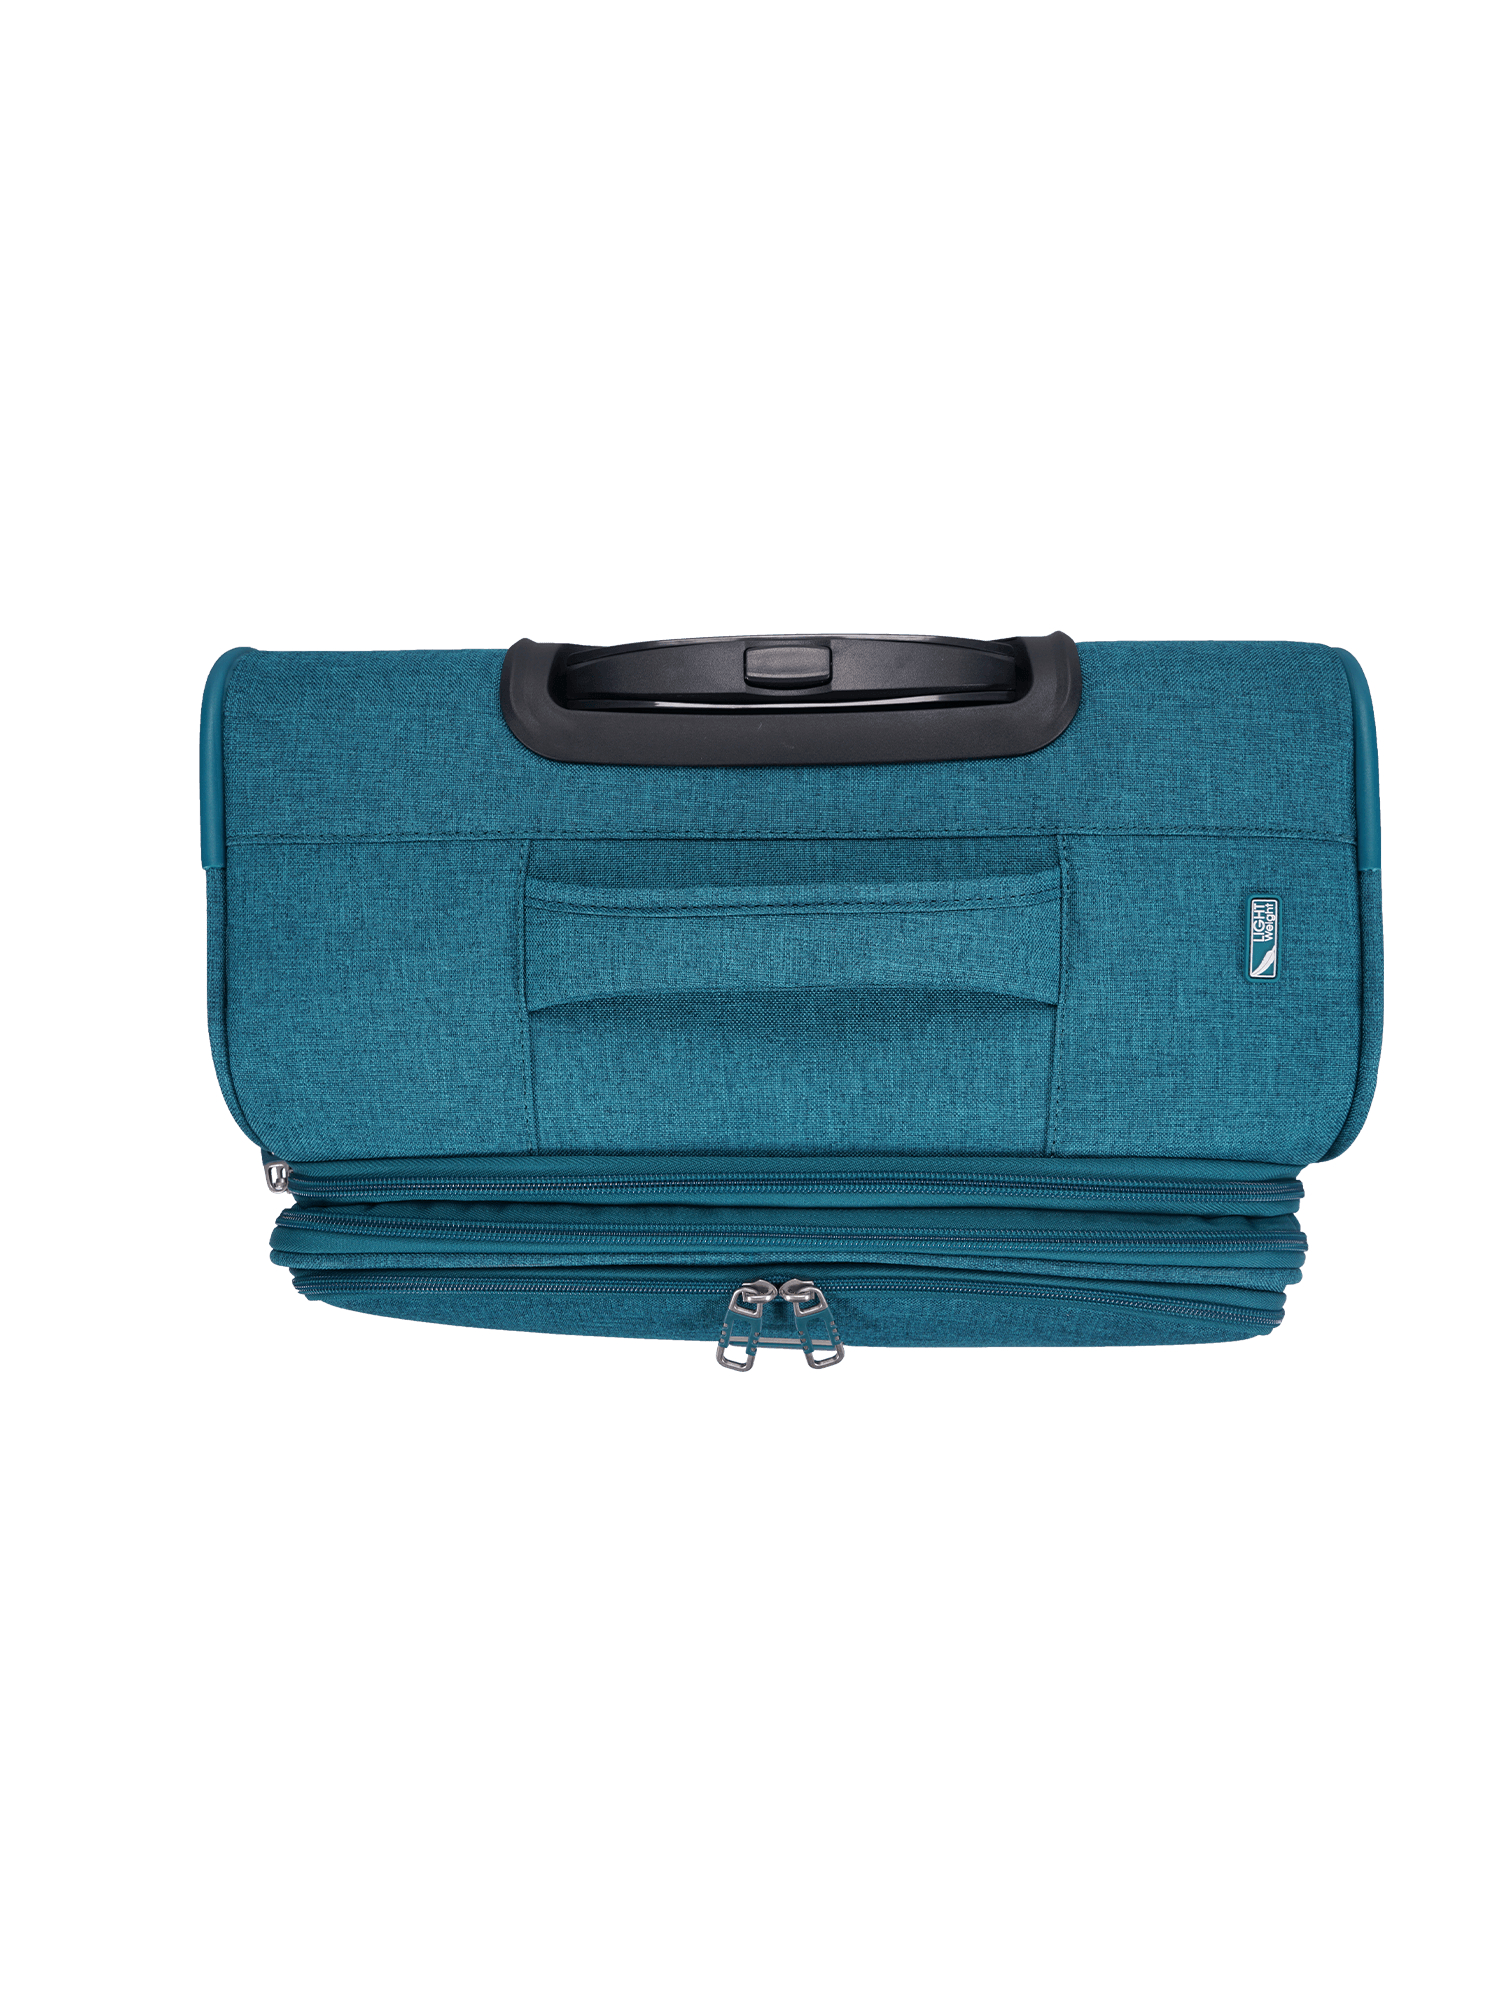 San Michelle Denim Voyager 79cm Suitcase - San Michelle Bags suitcase nz